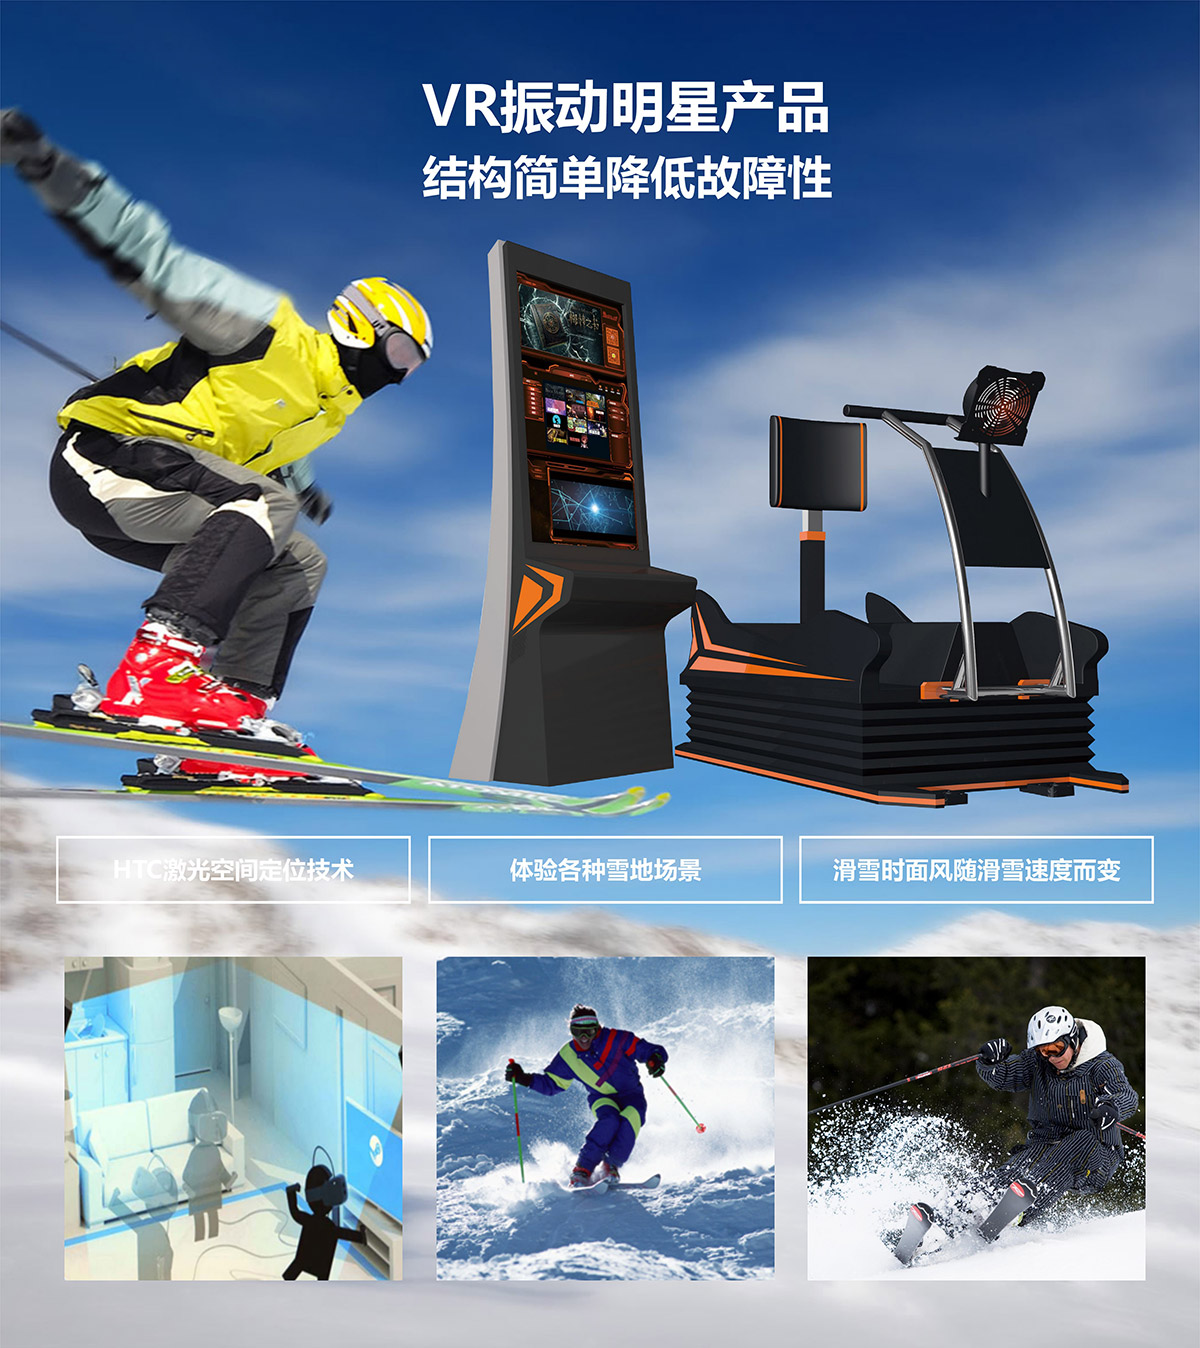 模拟体验VR明星产品模拟滑雪.jpg